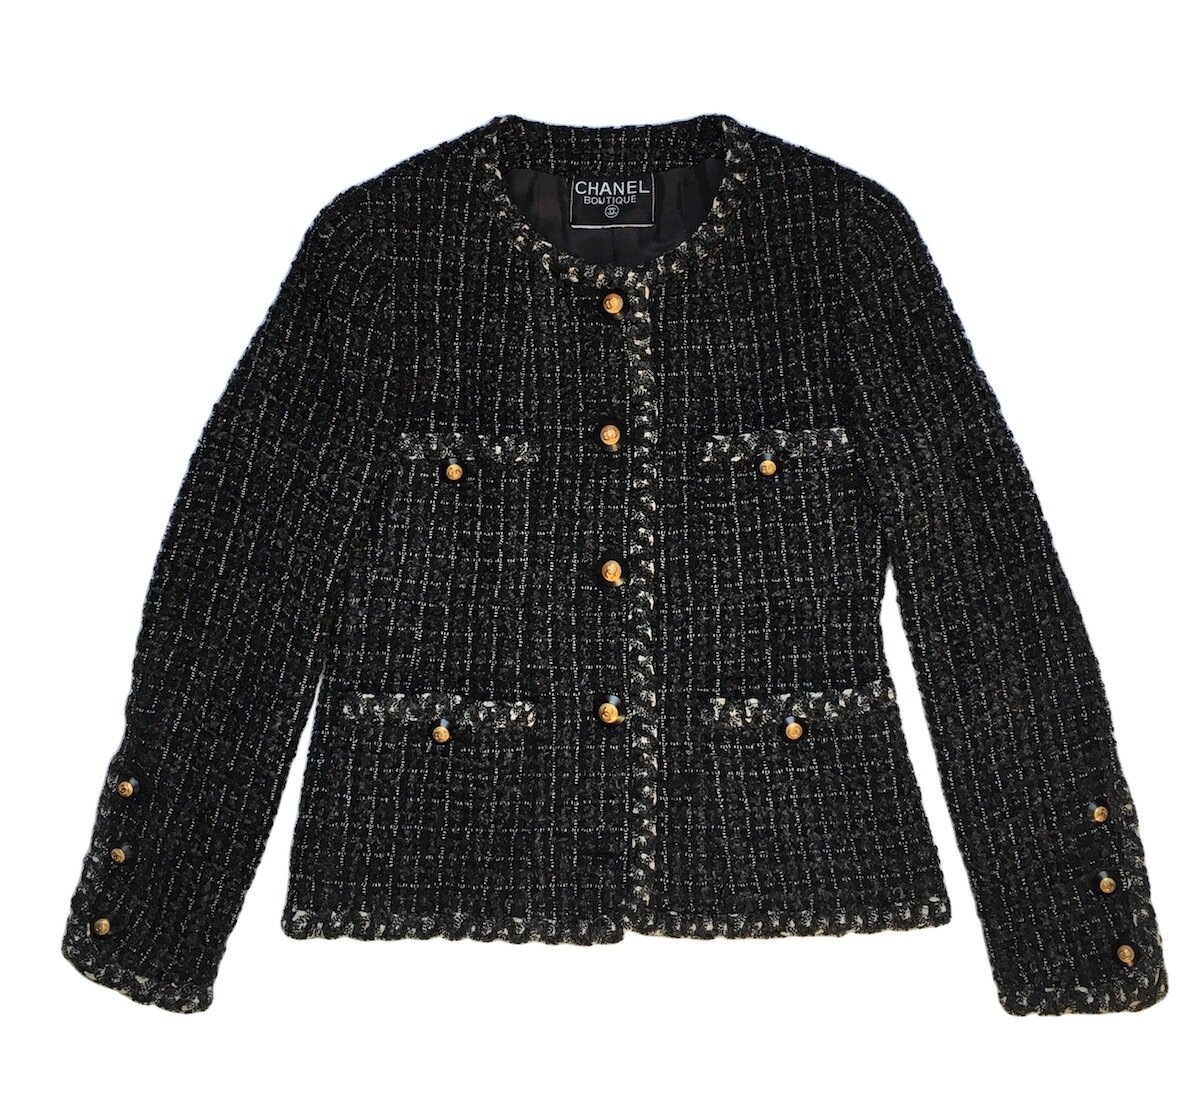 Chanel Classic Tweed Jacket